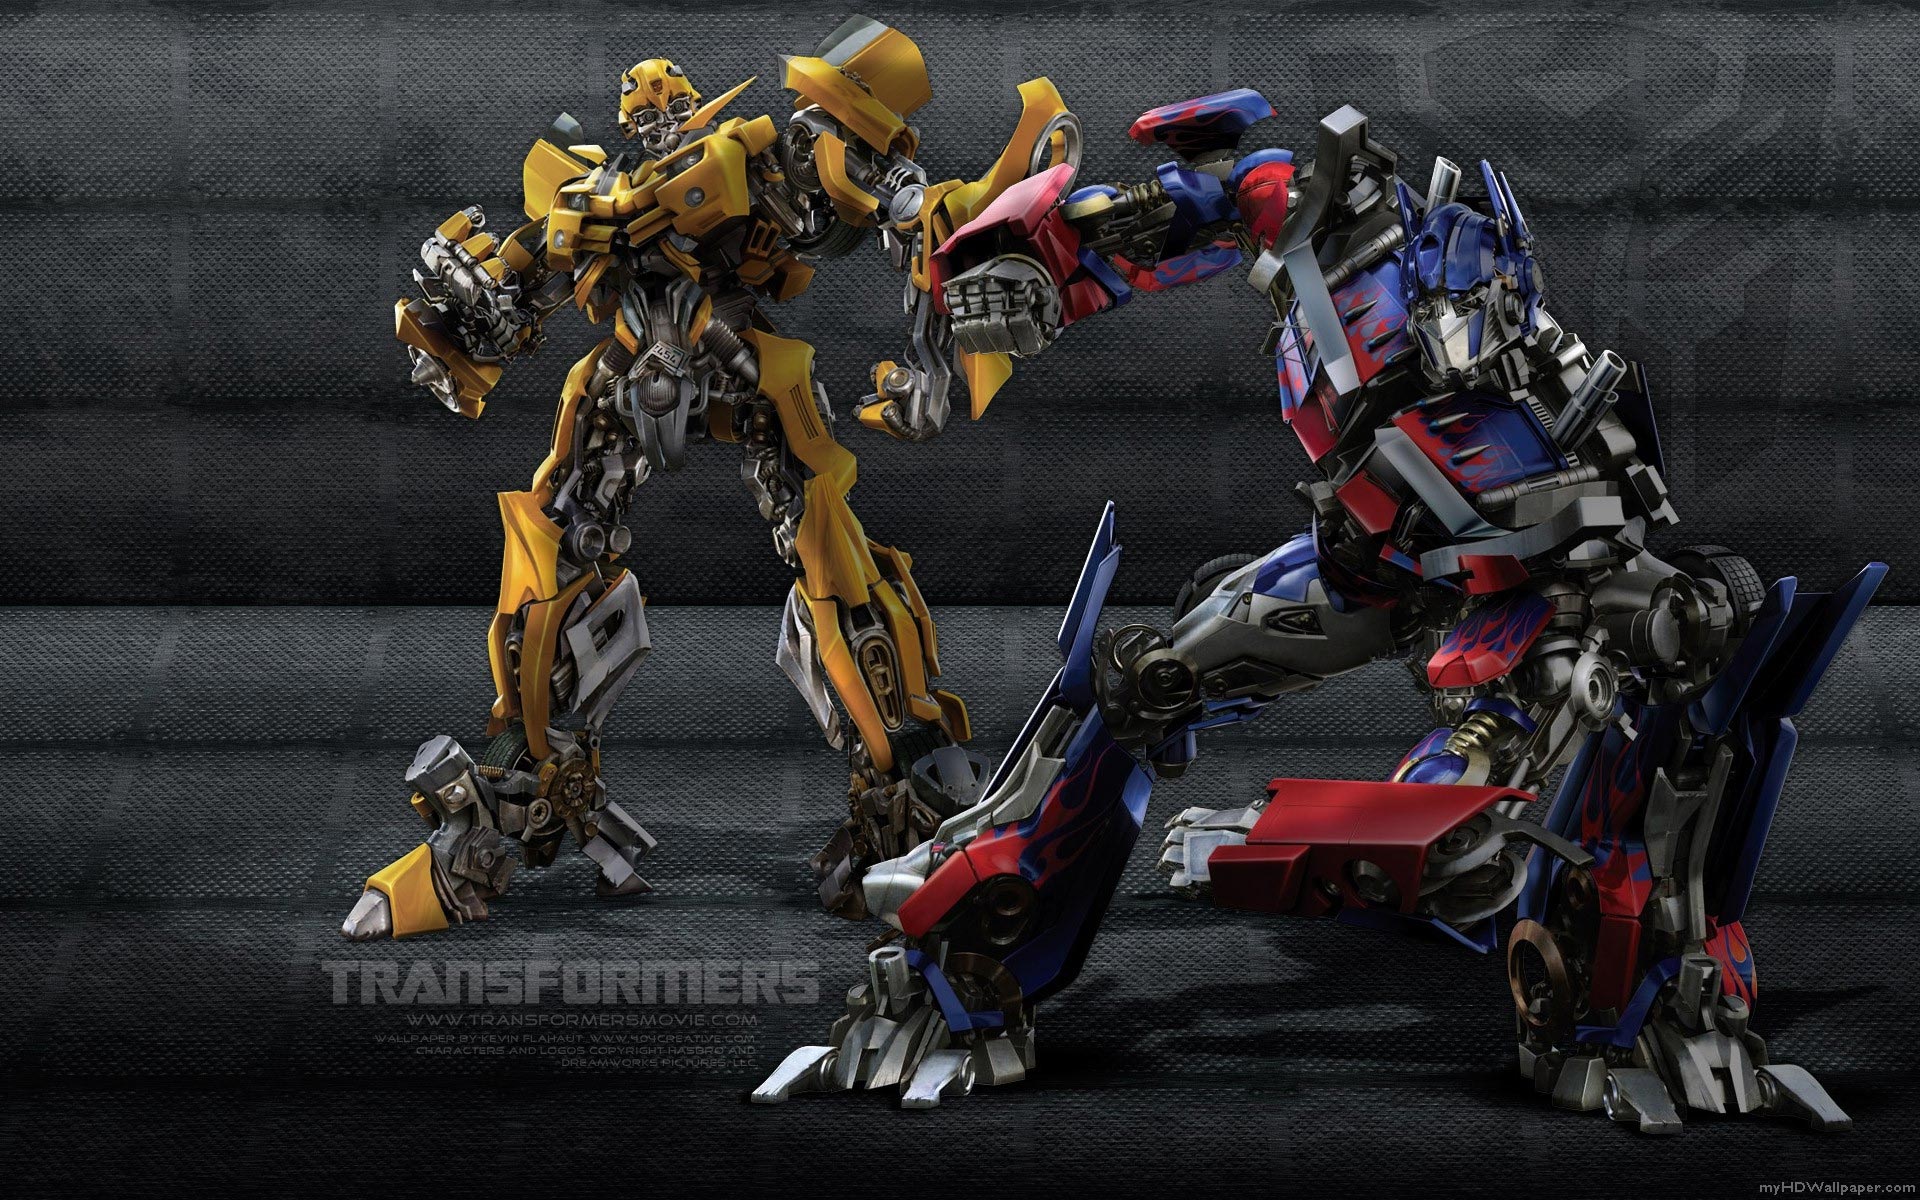 Descarga gratis la imagen Transformers, Películas en el escritorio de tu PC